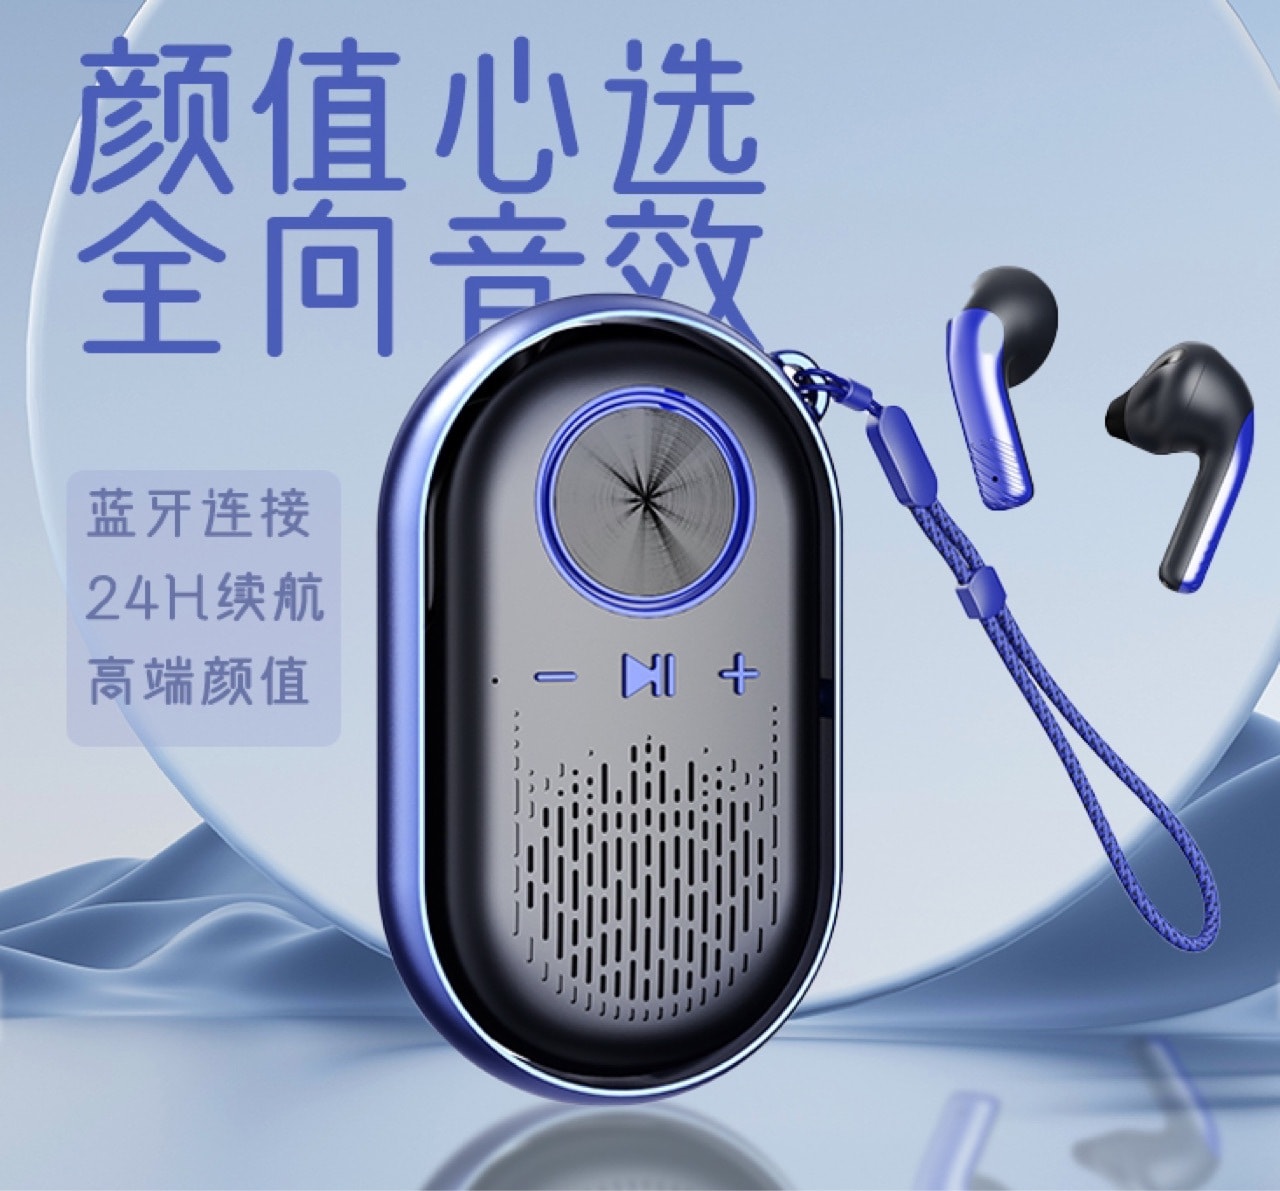 迷你便攜180度旋轉二合一無線藍芽喇叭+入耳式藍芽耳機／藍芽音箱耳機 HF02